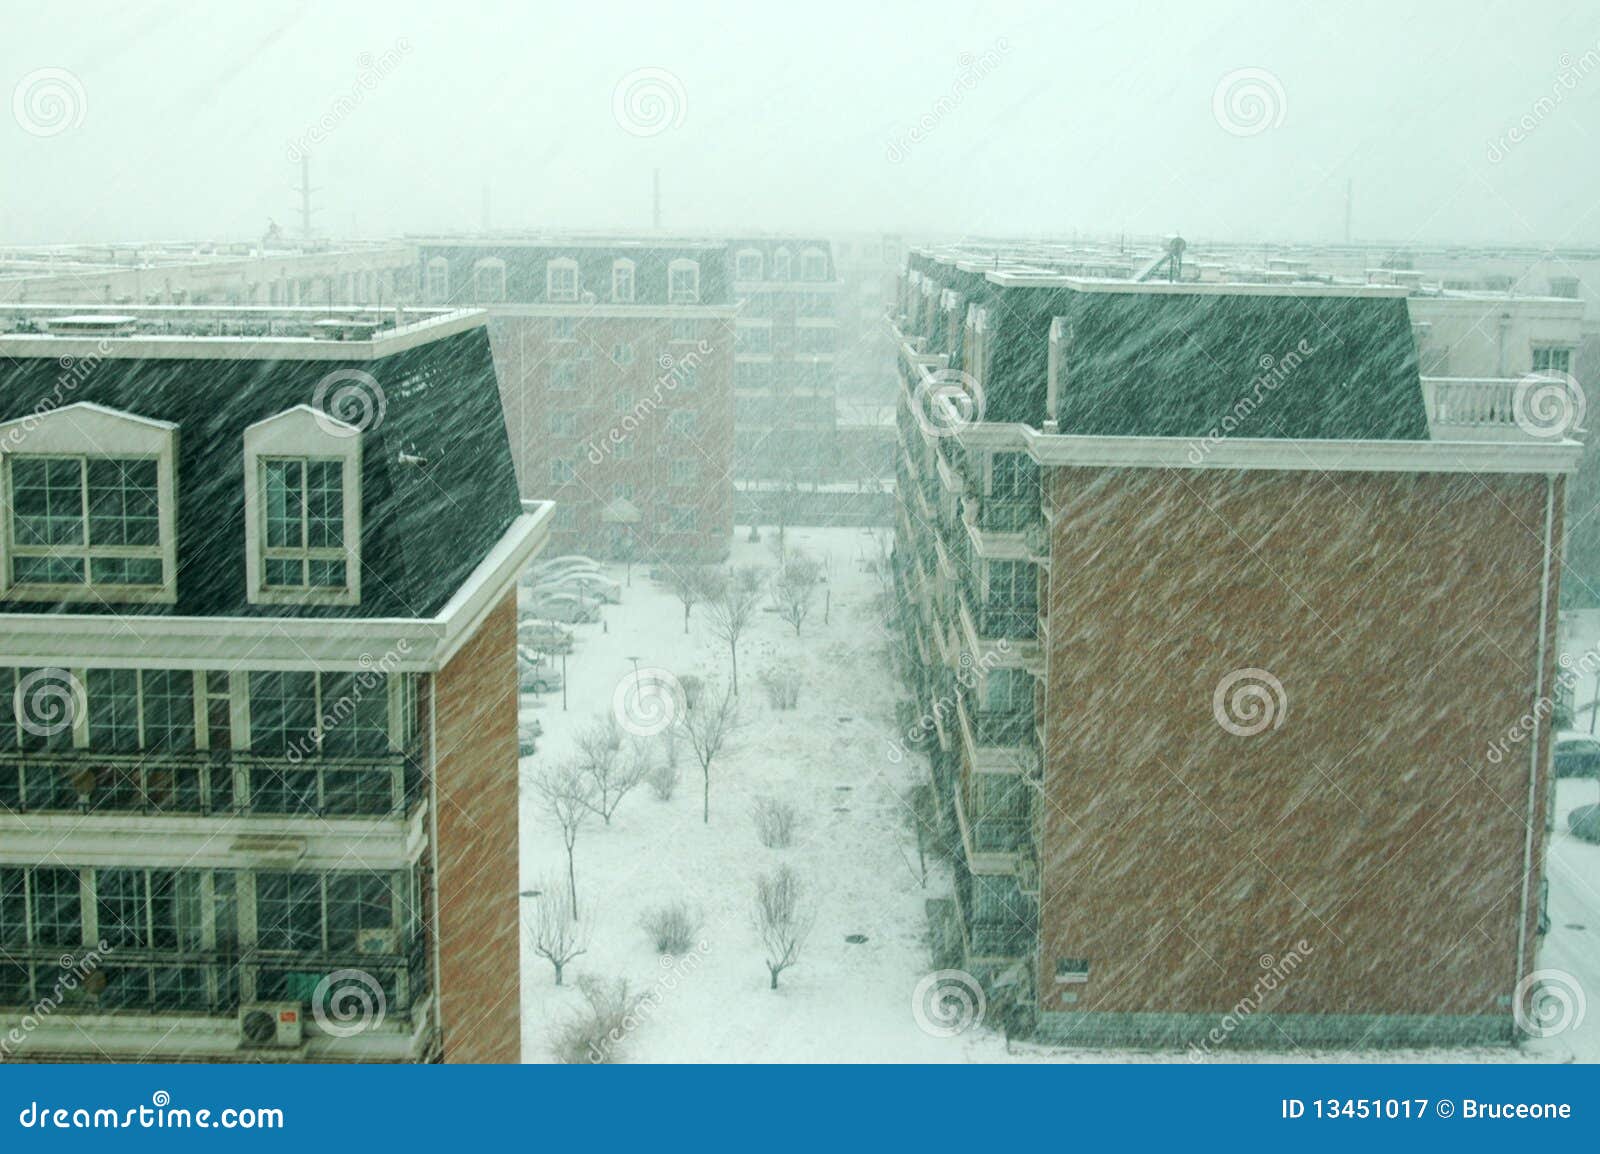 a snowstorm in beijing